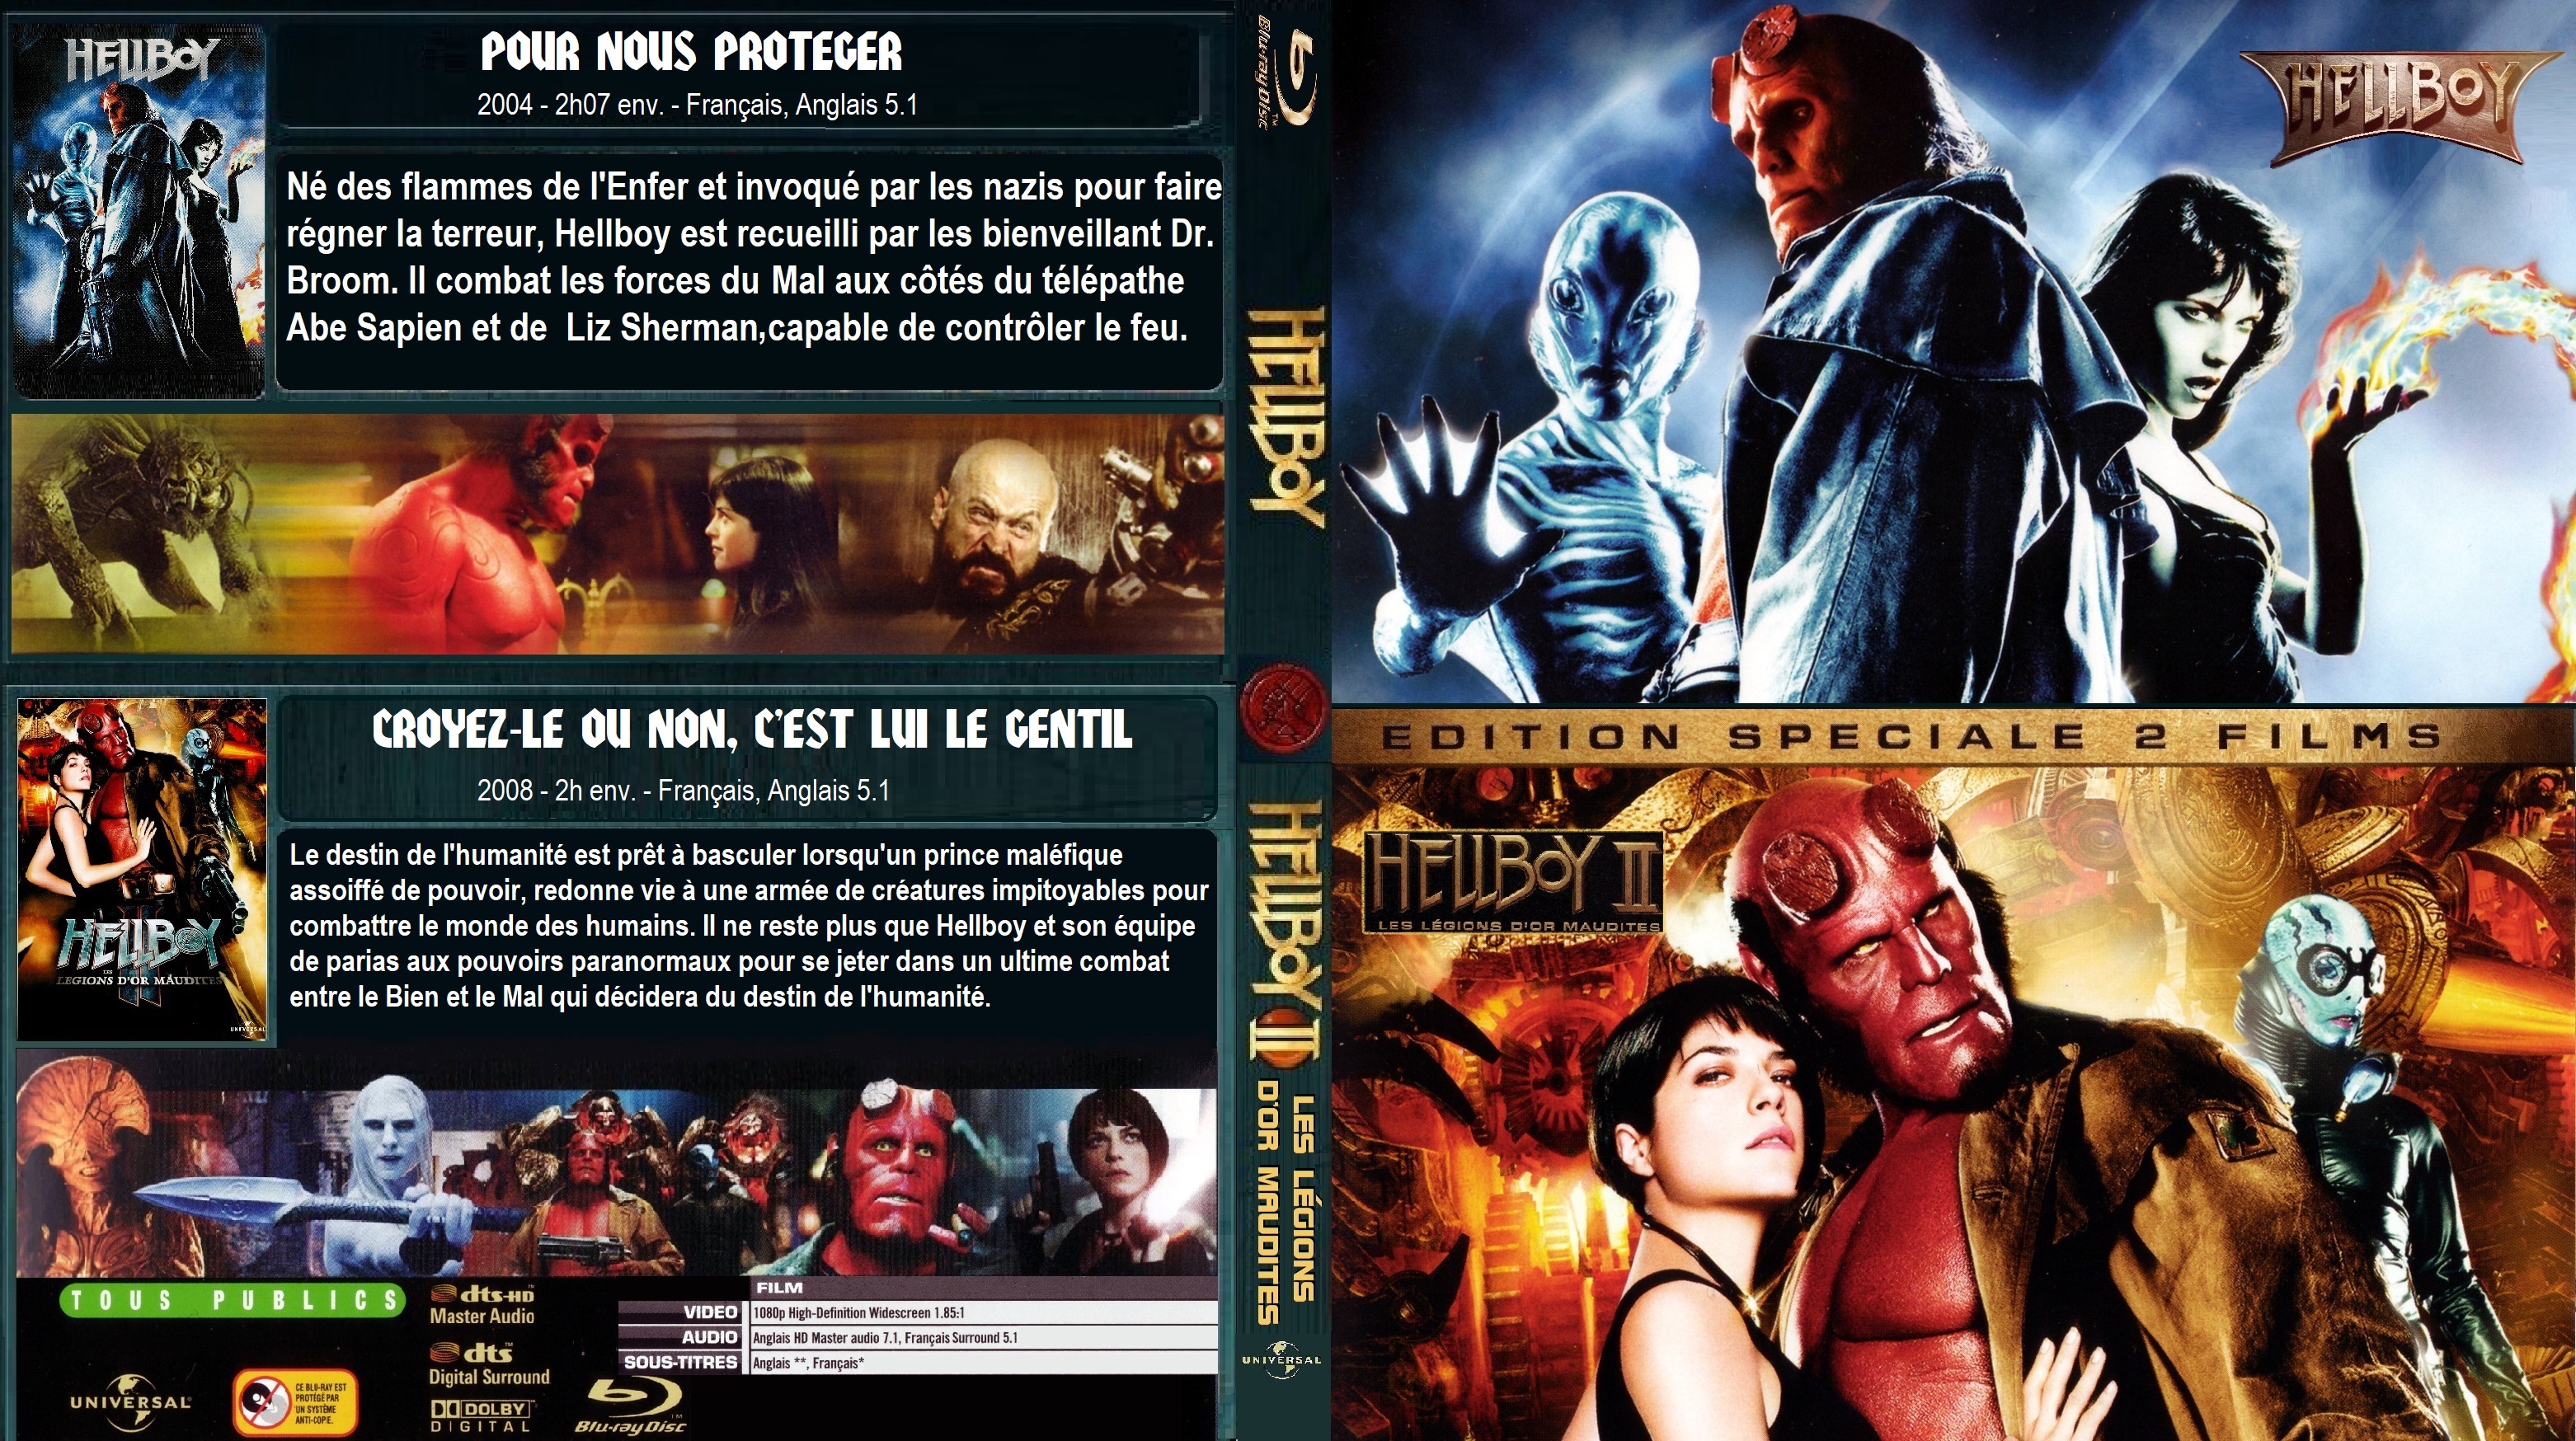 Jaquette DVD Hellboy 1 & 2 custom (BLU-RAY)